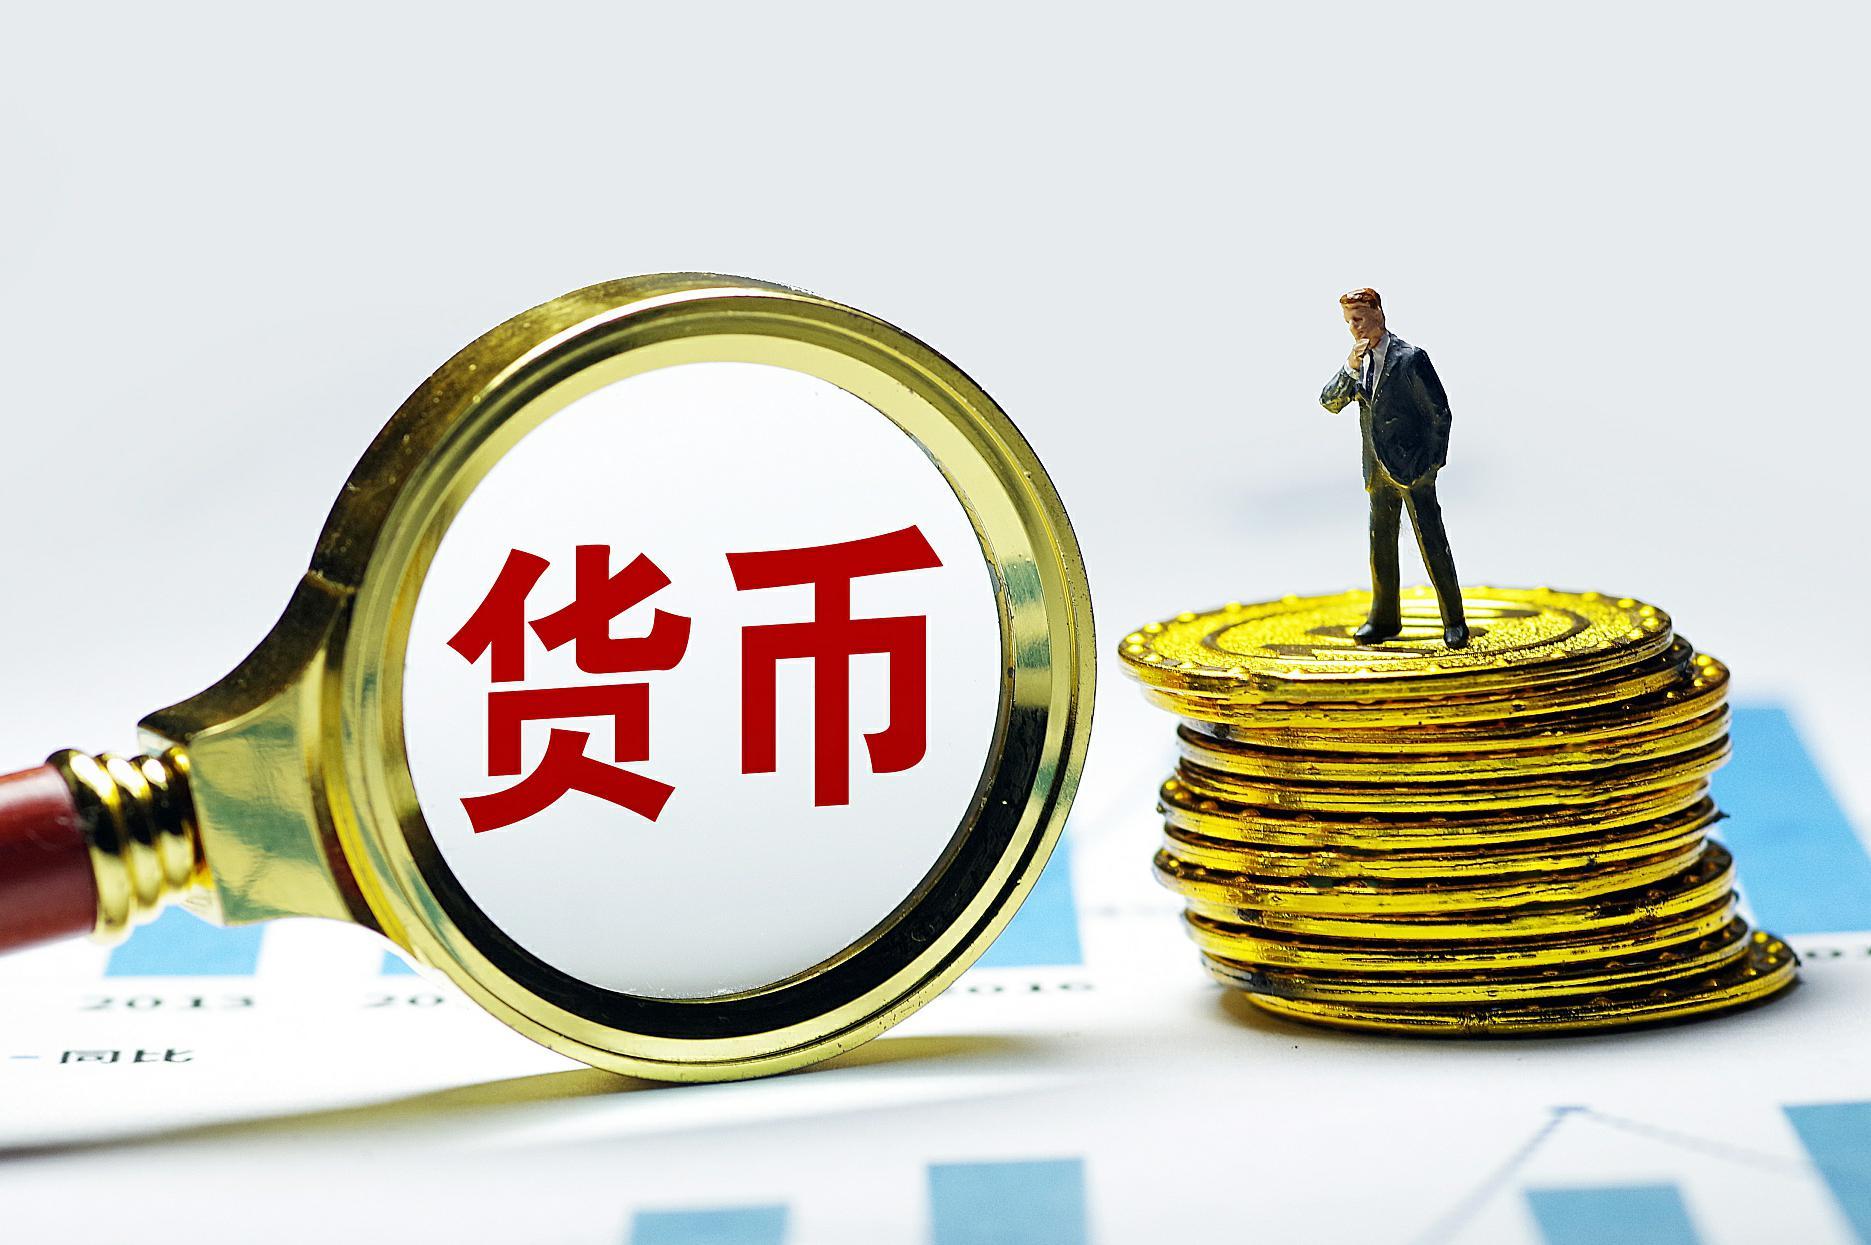 中国人民银行与日本银行续签货币互换协议协议有效期三年